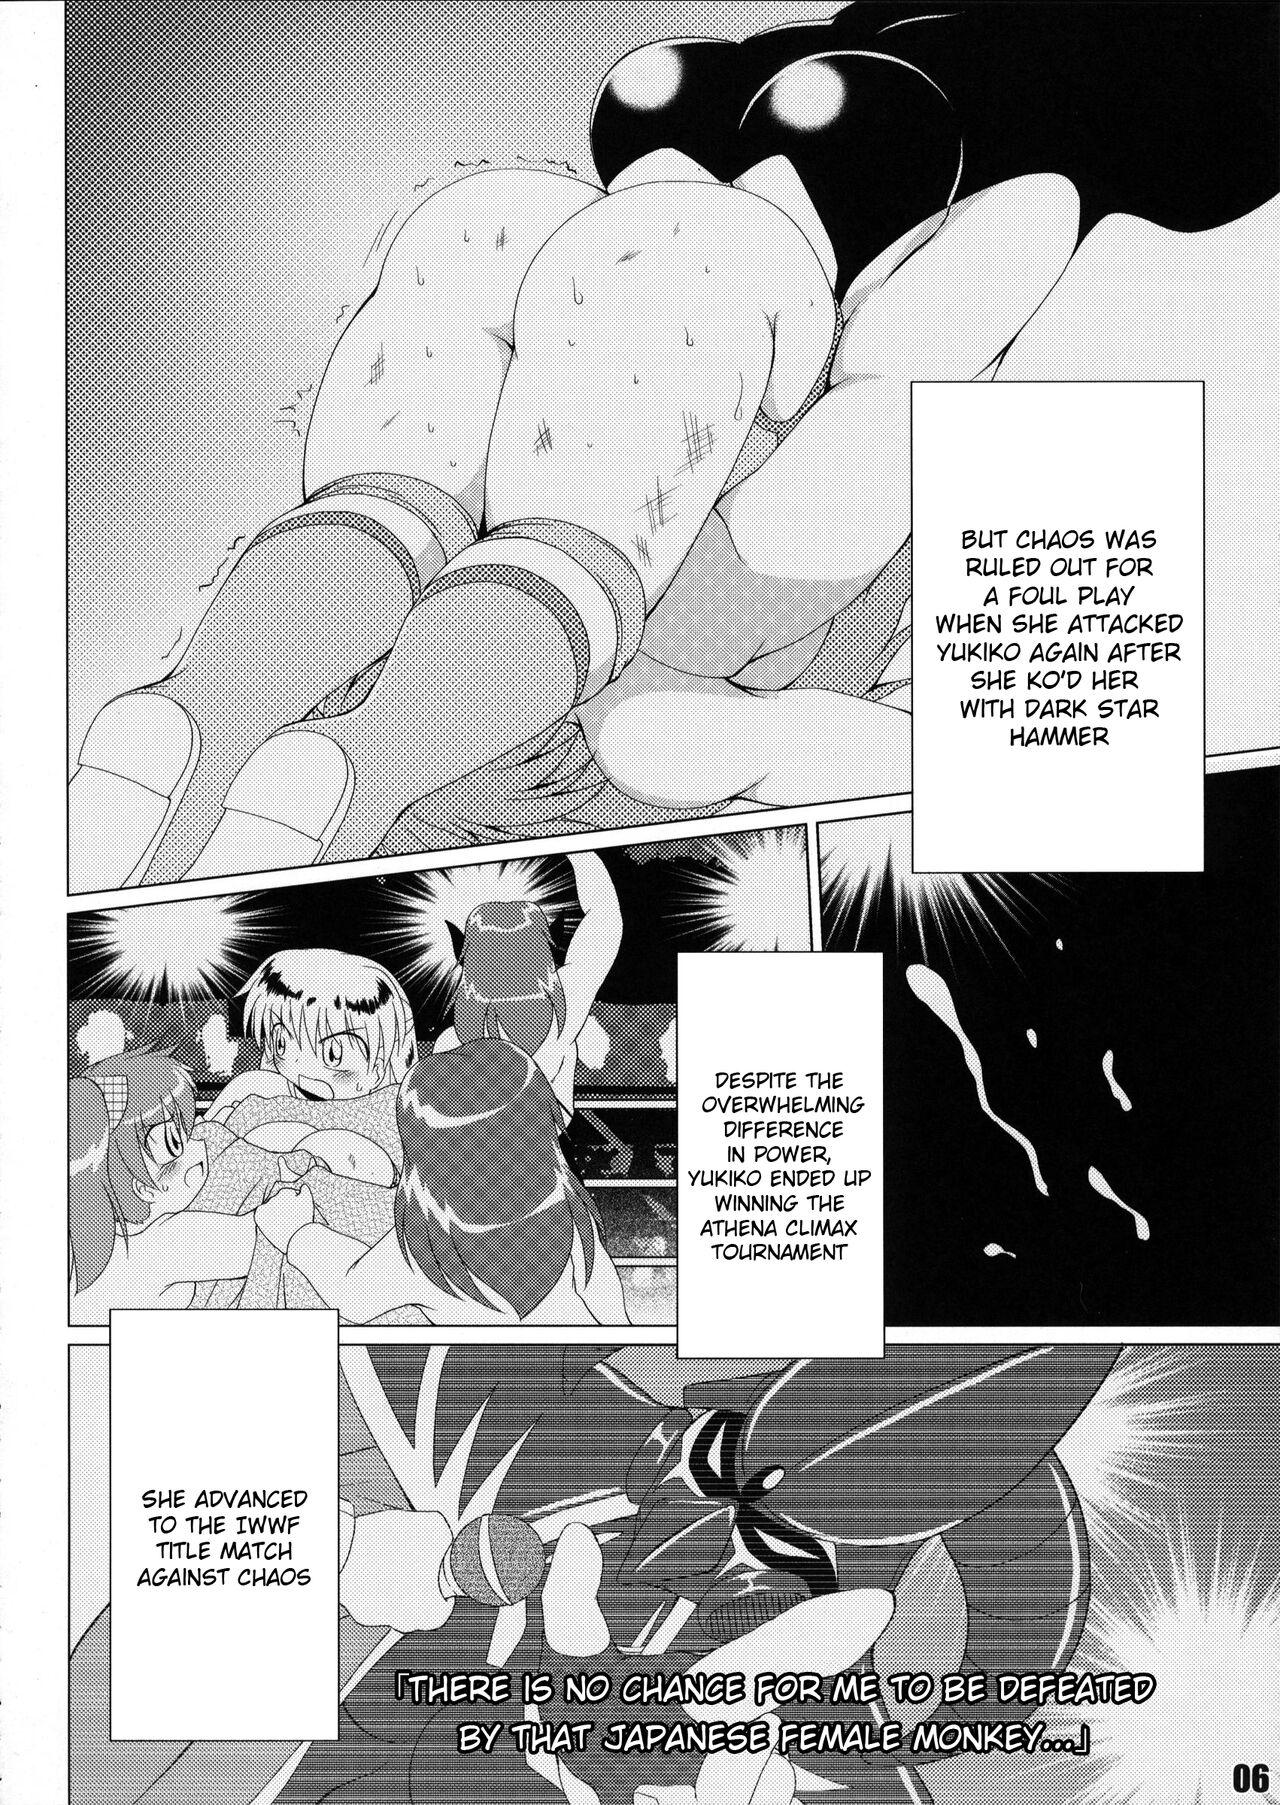 Fucked Hard (COMIC1☆6) [Soket=Pocket (Soket)] Mighty Yukiko vs Dark Star Chaos (FALLIN' ANGELS4 (WRESTLE ANGELS)) - Wrestle angels Culo Grande - Page 2